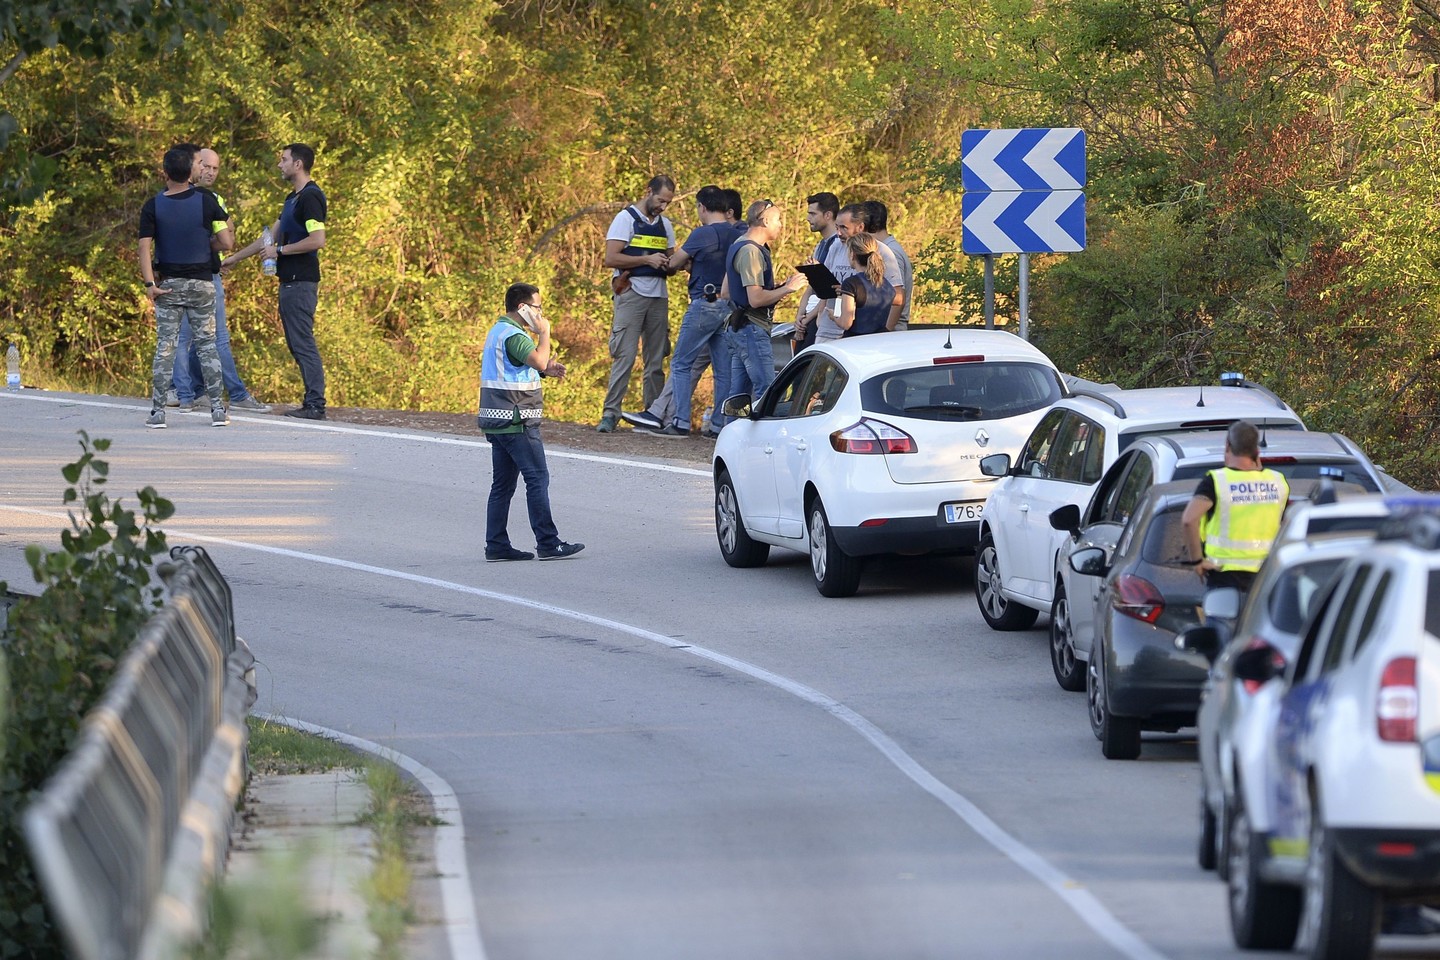  Ispanijos policija po teroro išpuolių virtinės dar labiau sustiprino saugumą.<br> AFP/„Scanpix“ nuotr.